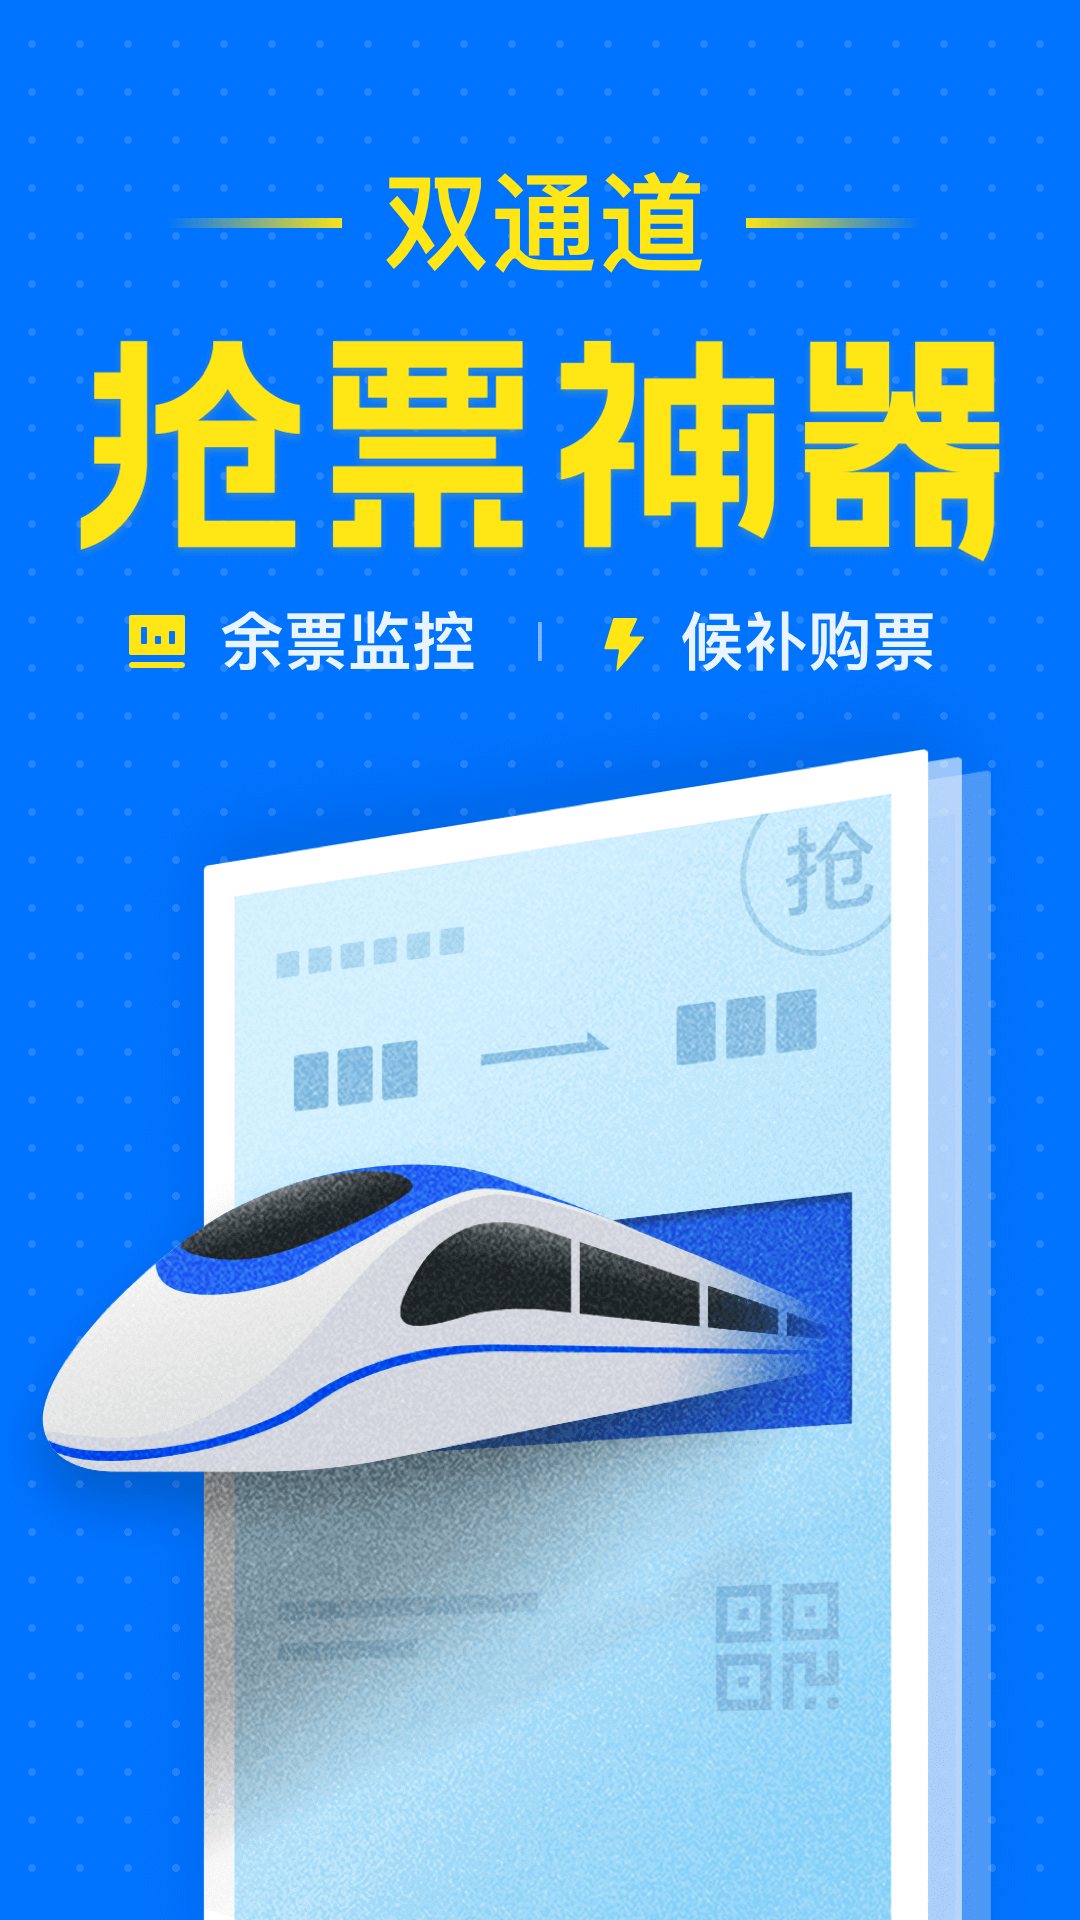 智行火车票12306高铁抢票v6.7.1截图1